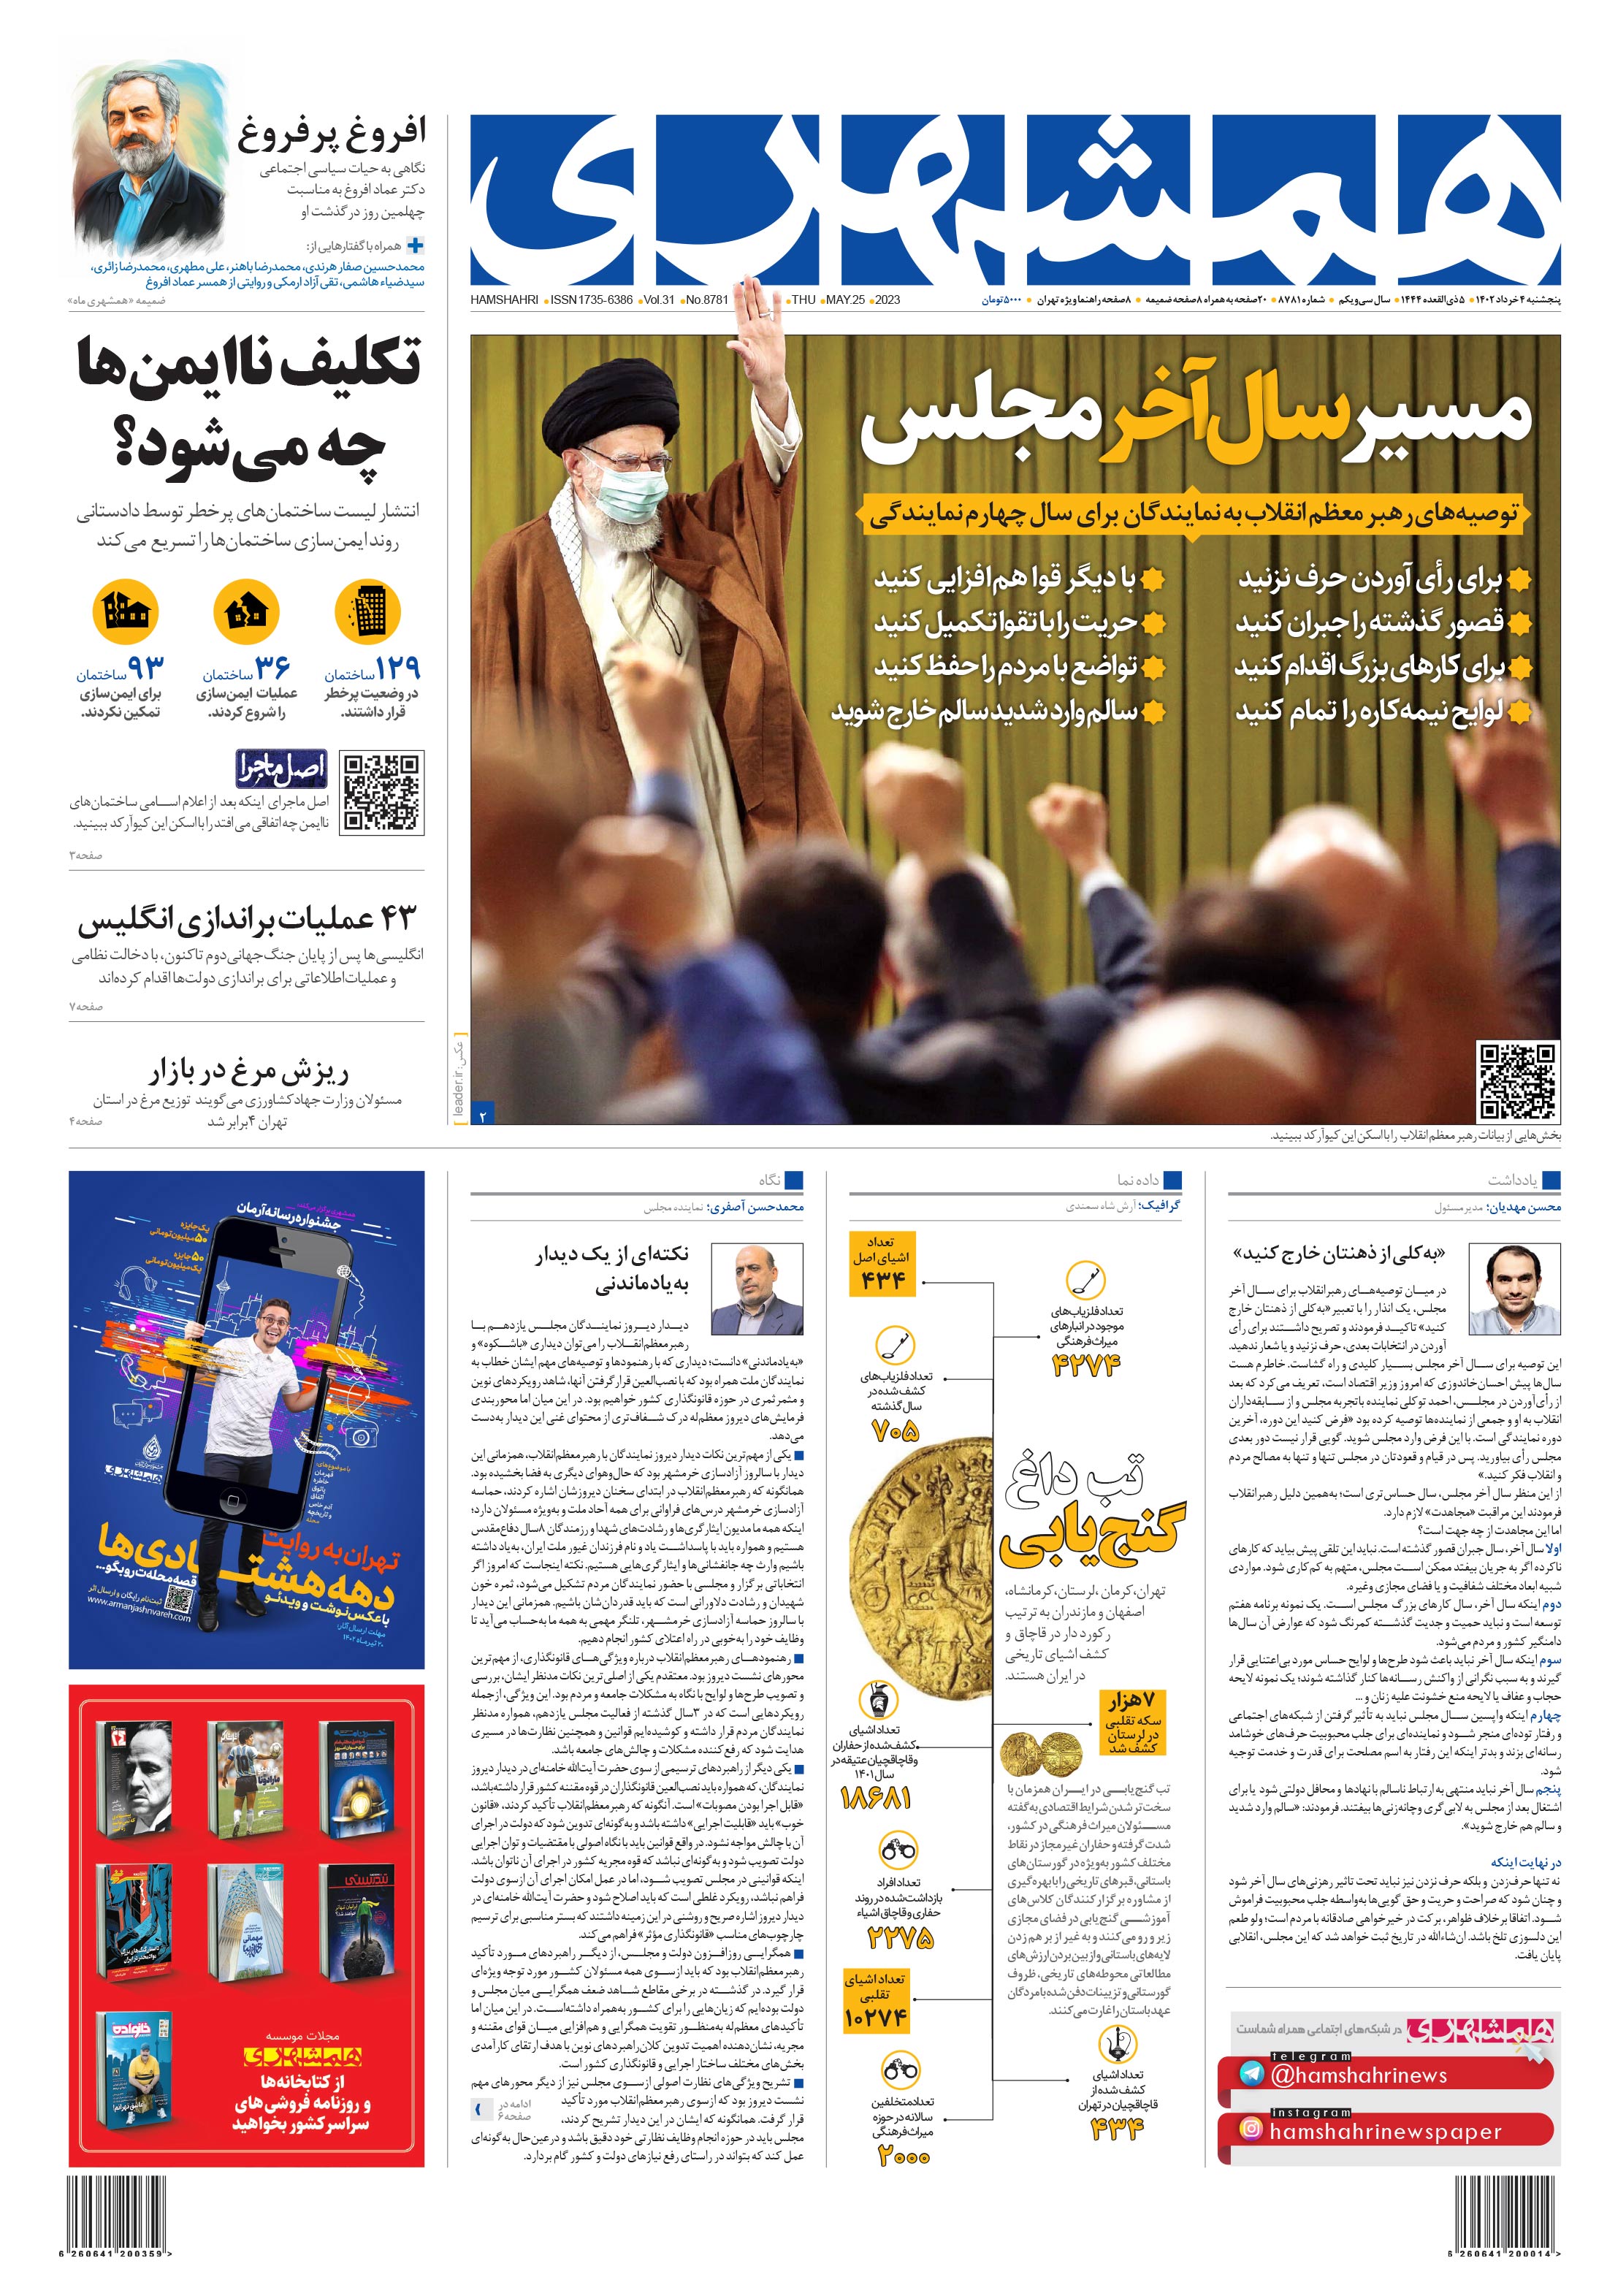 صفحه اول پنجشنبه 4 خرداد 1402 